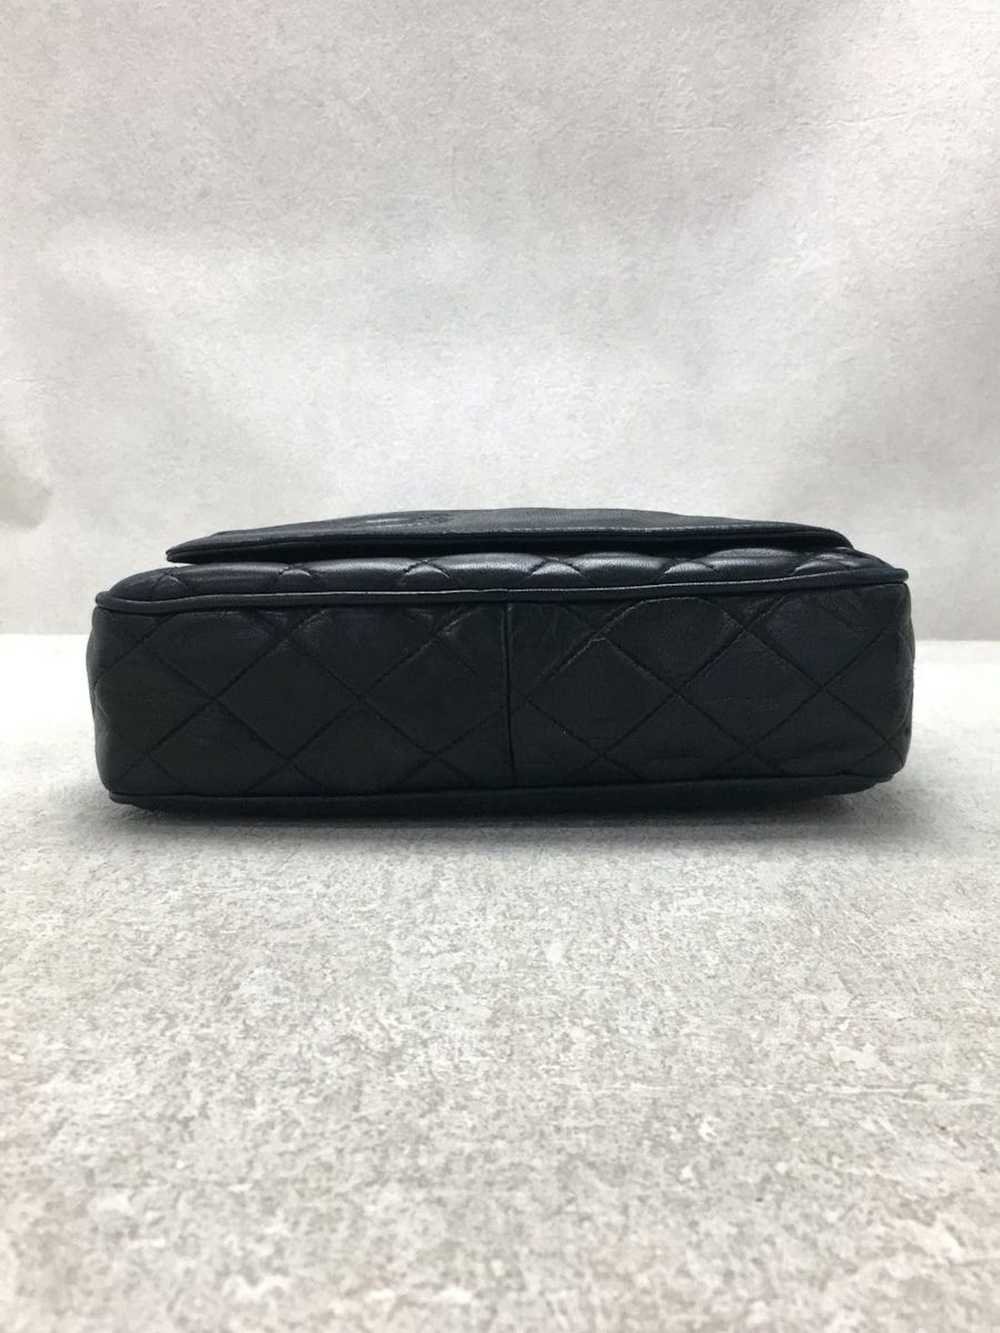 Chanel Chanel Leather Shoulder Bag - image 5